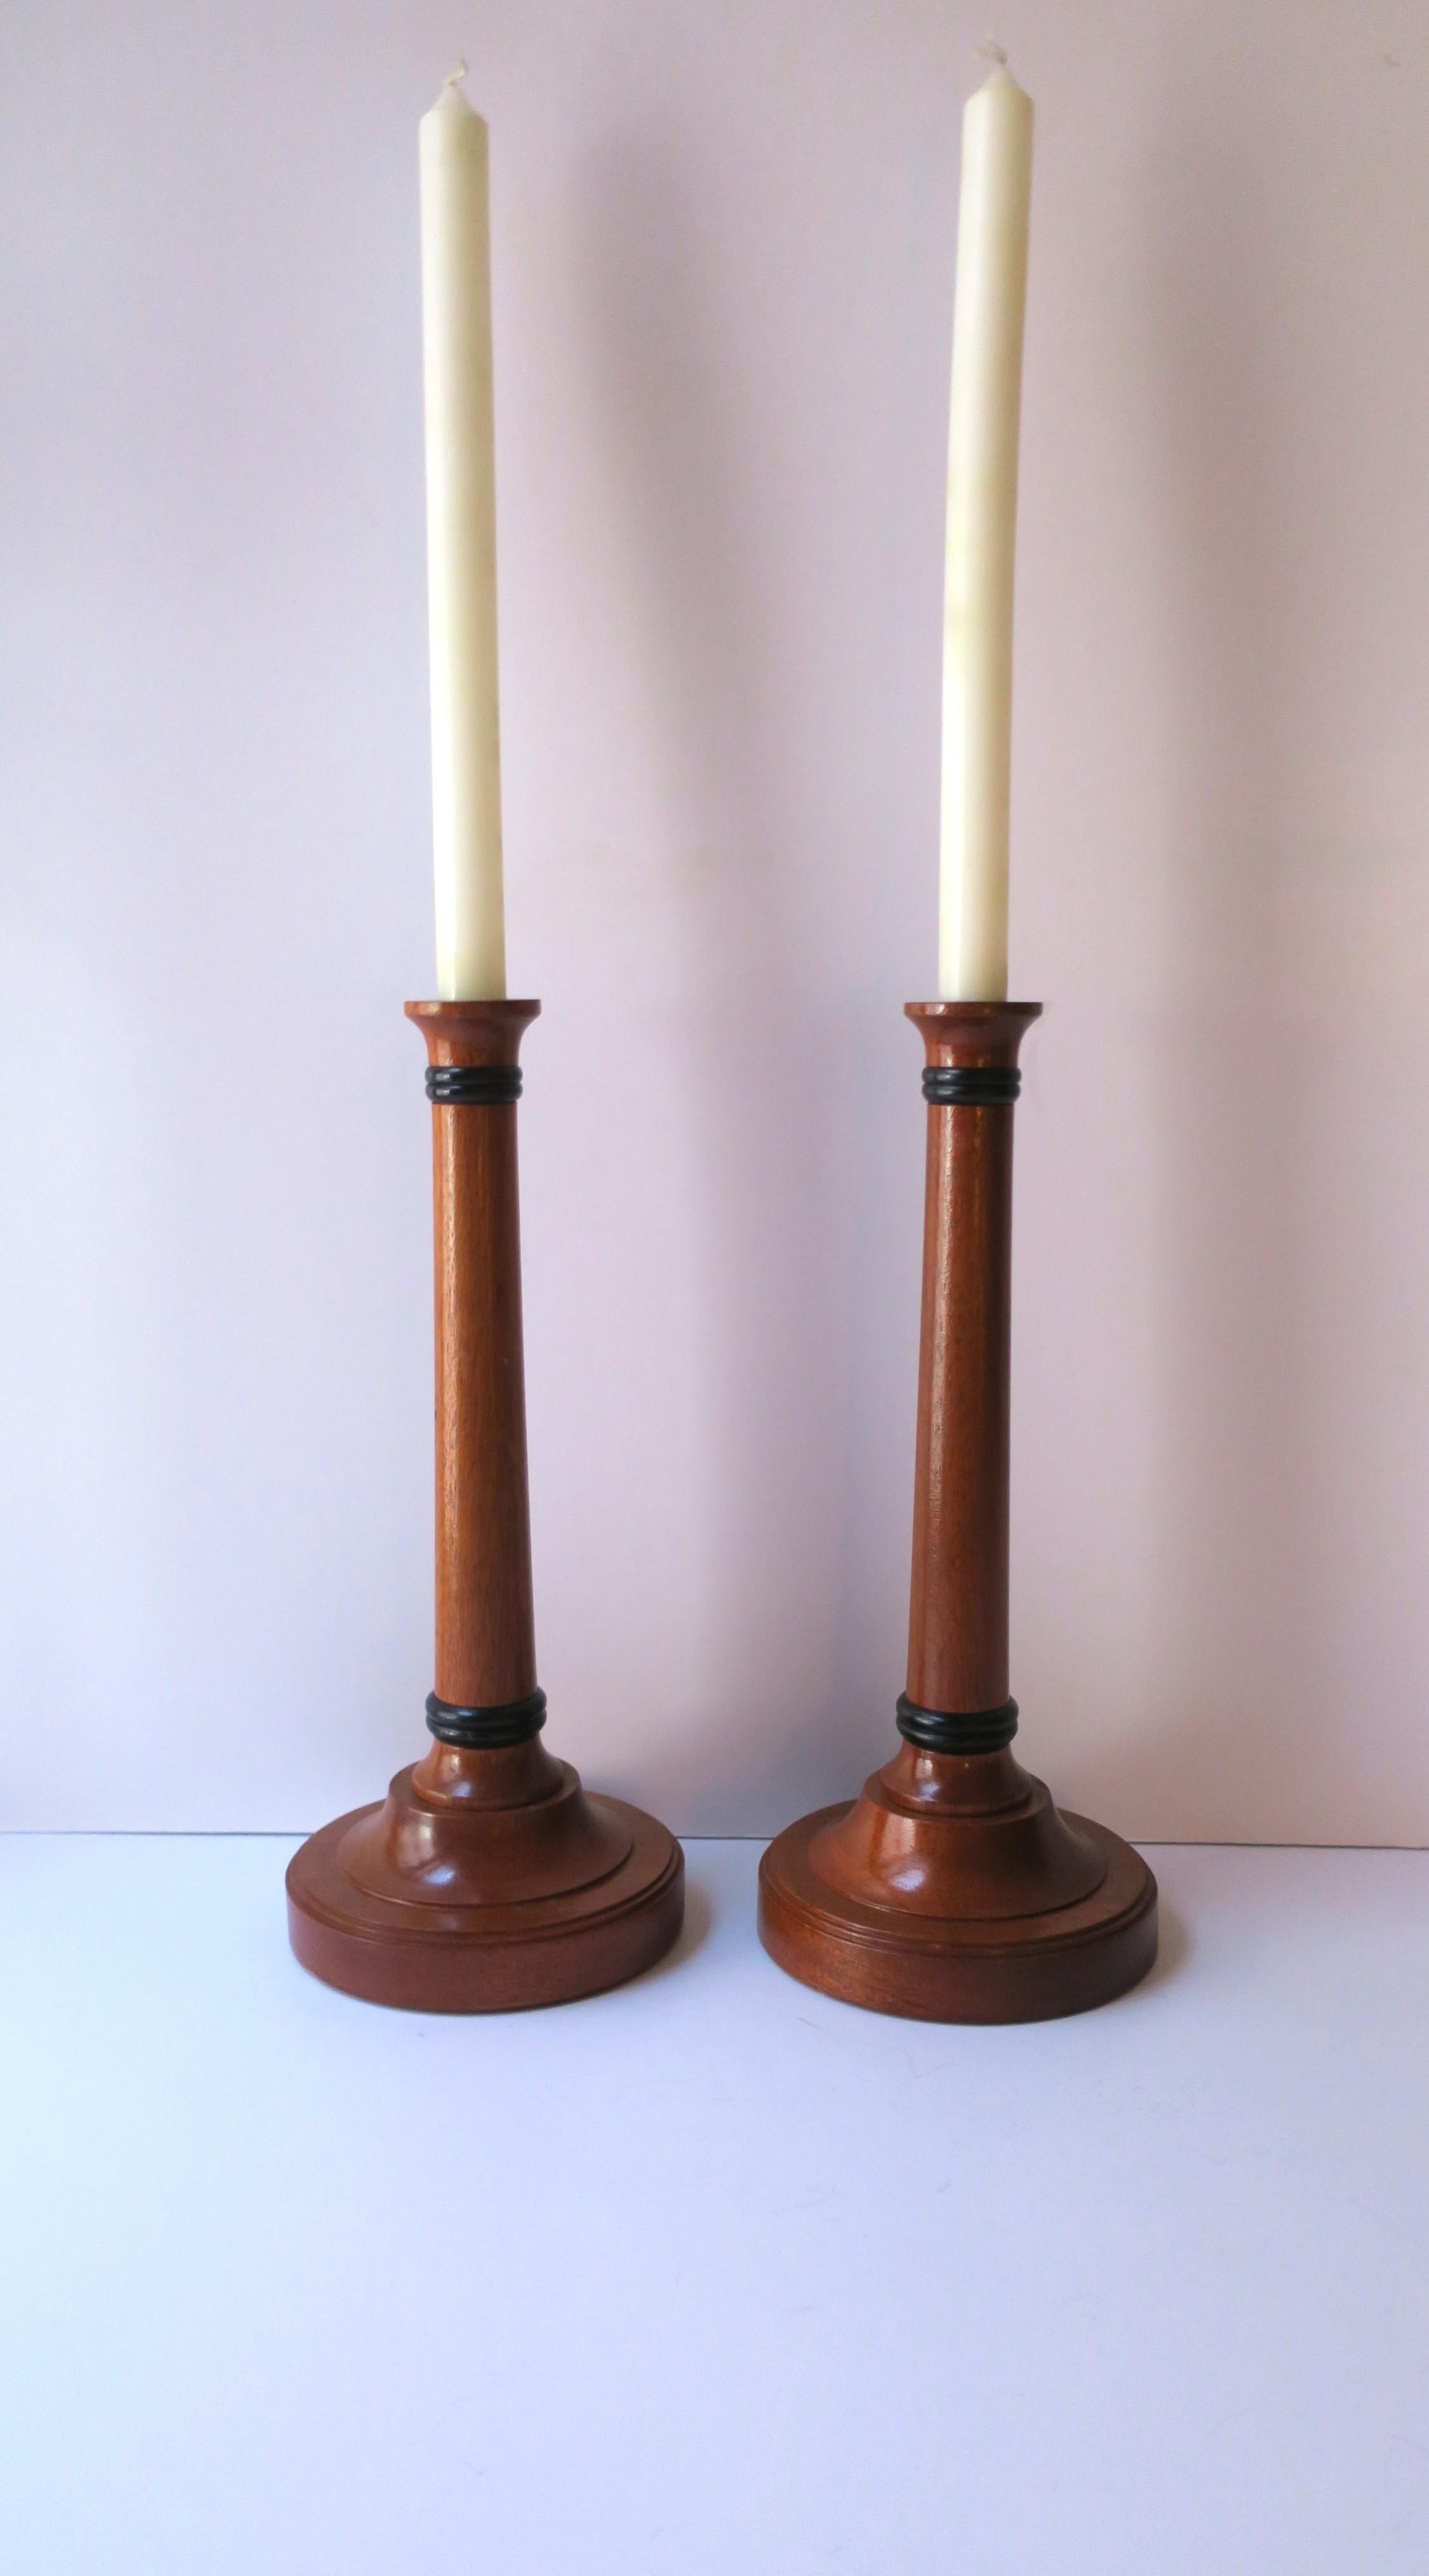 Paire de bougeoirs en bois fabriqués à la main en Angleterre, dans une riche teinte brune avec des détails noirs en haut et en bas, vers la fin du 20e siècle, Angleterre. La paire semble n'avoir jamais été utilisée. Un ensemble idéal pour une table